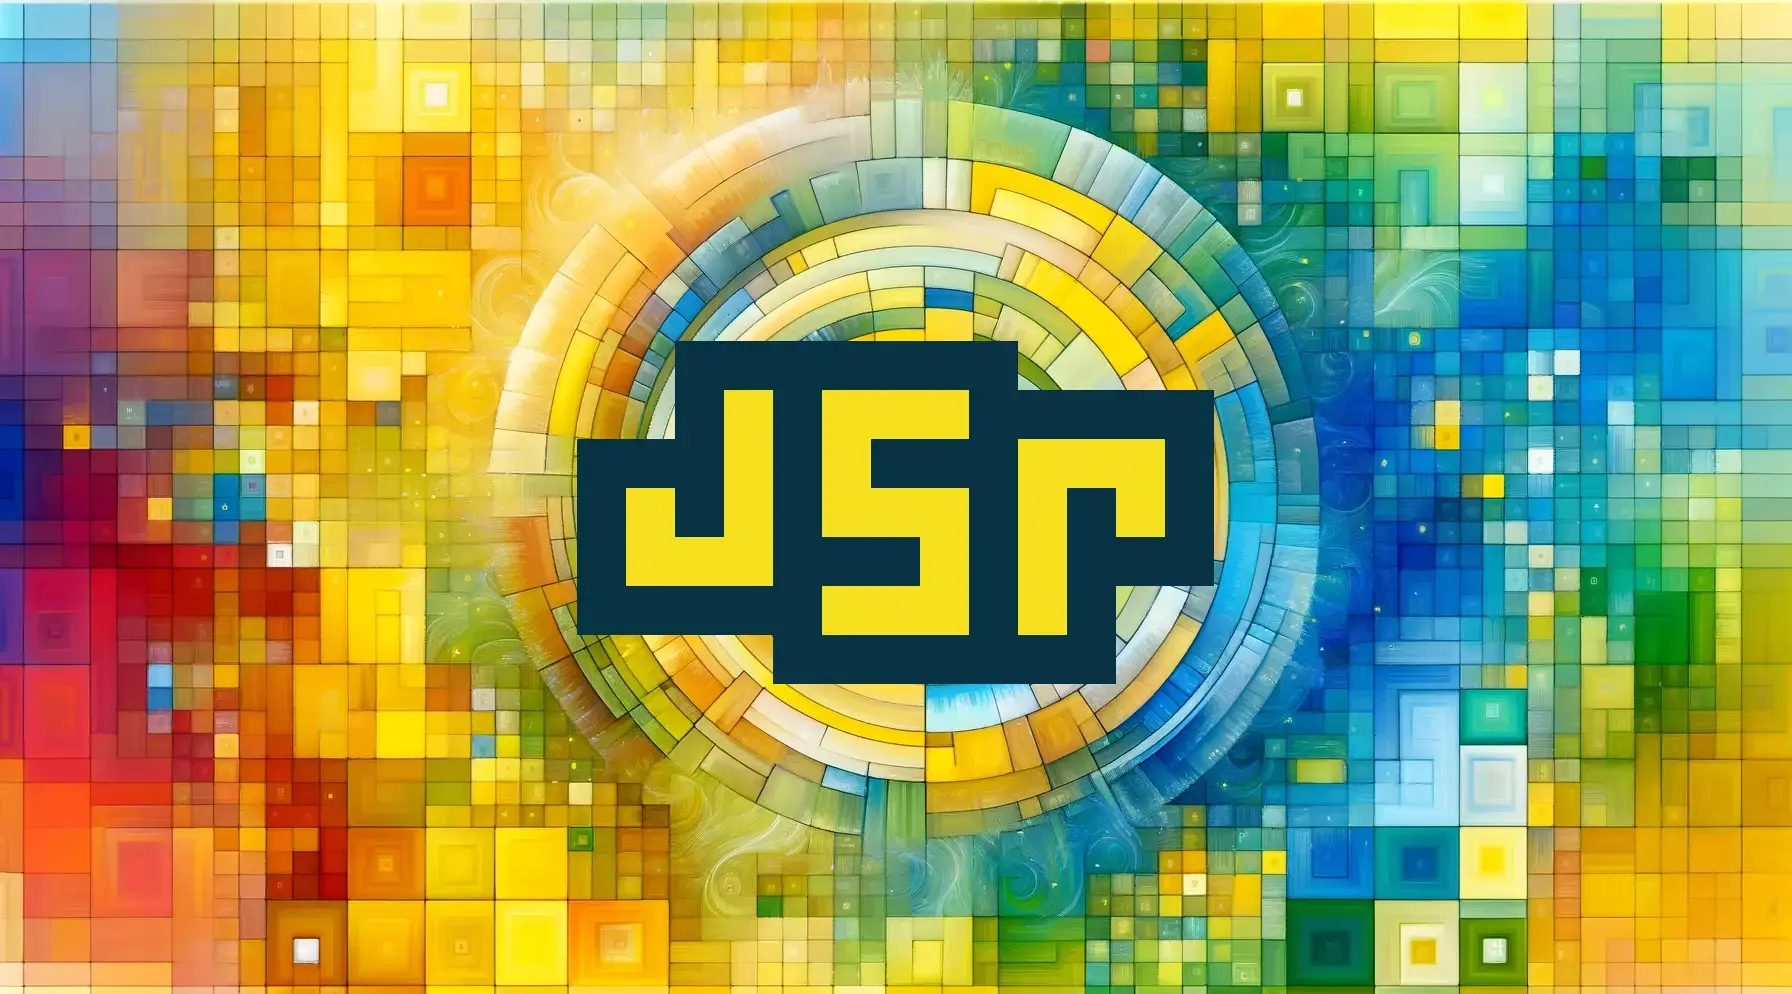 介绍 JSR - JavaScript 注册中心